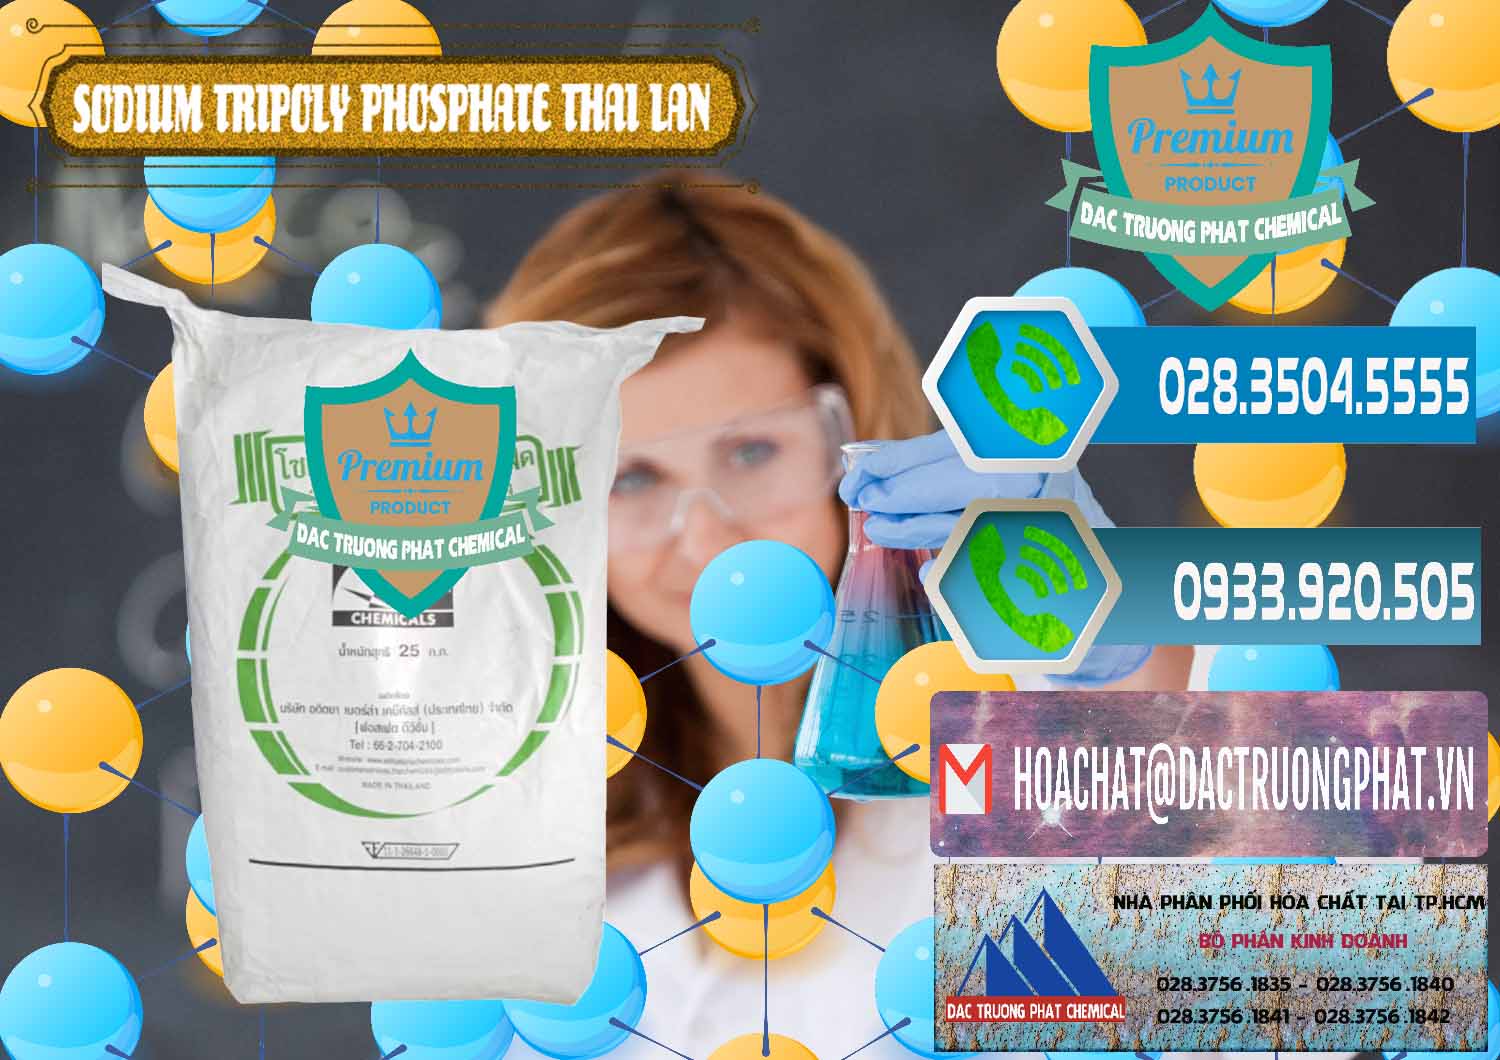 Chuyên bán - phân phối Sodium Tripoly Phosphate - STPP Aditya Birla Grasim Thái Lan Thailand - 0421 - Cty cung ứng & phân phối hóa chất tại TP.HCM - congtyhoachat.net